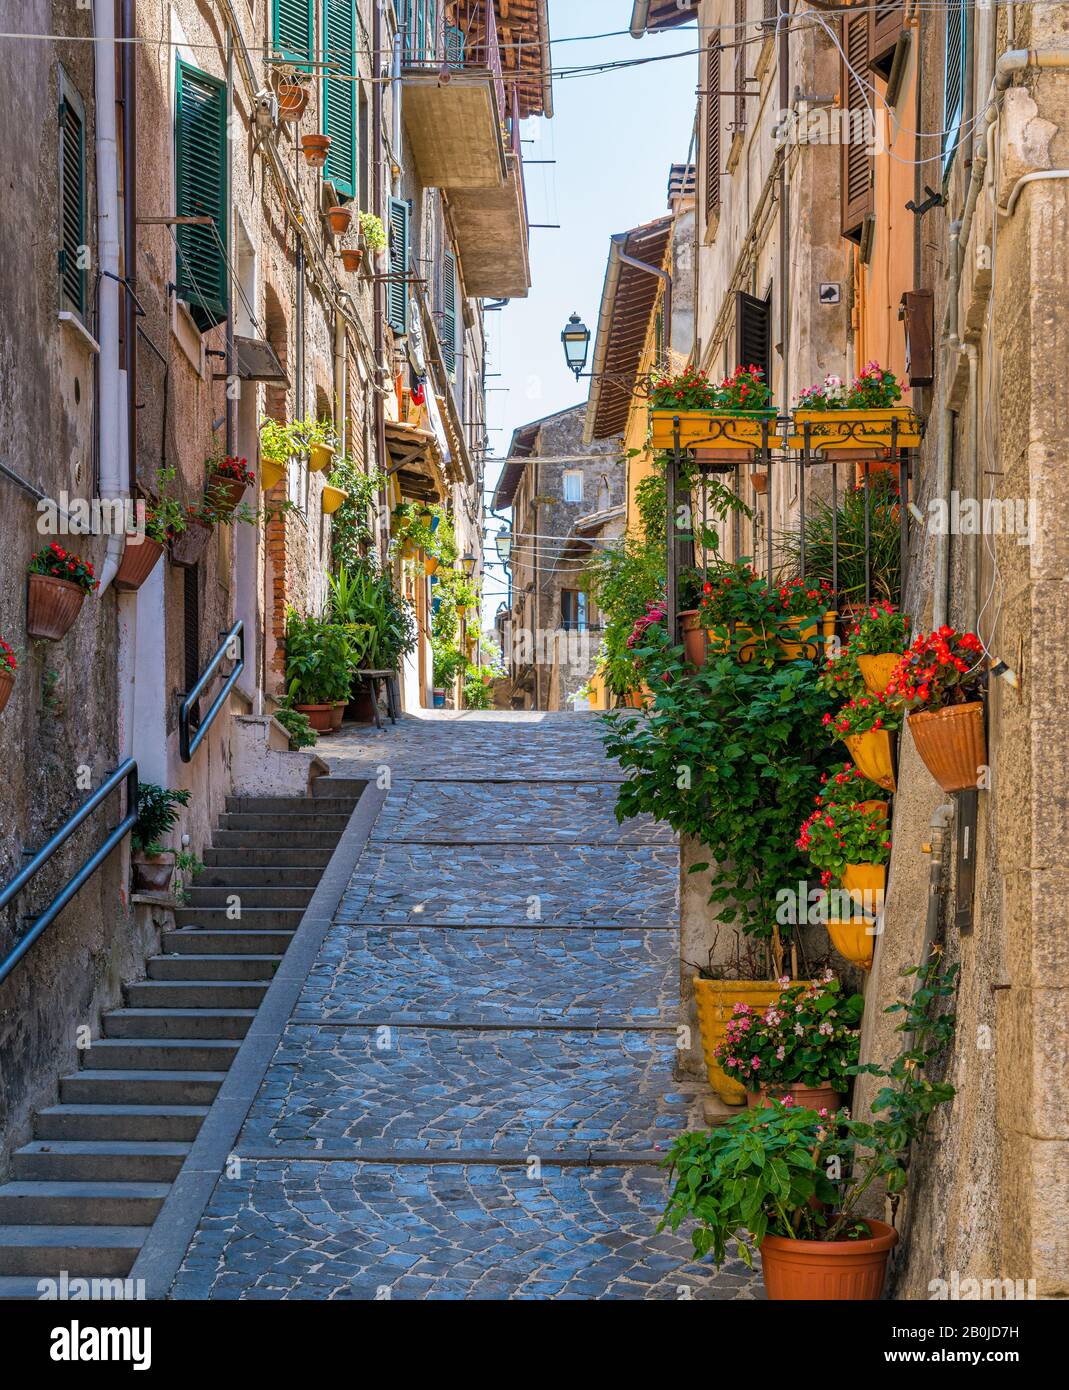 Scenic sight in the village of Vallerano, Province of Viterbo, Lazio, Italy. Stock Photo